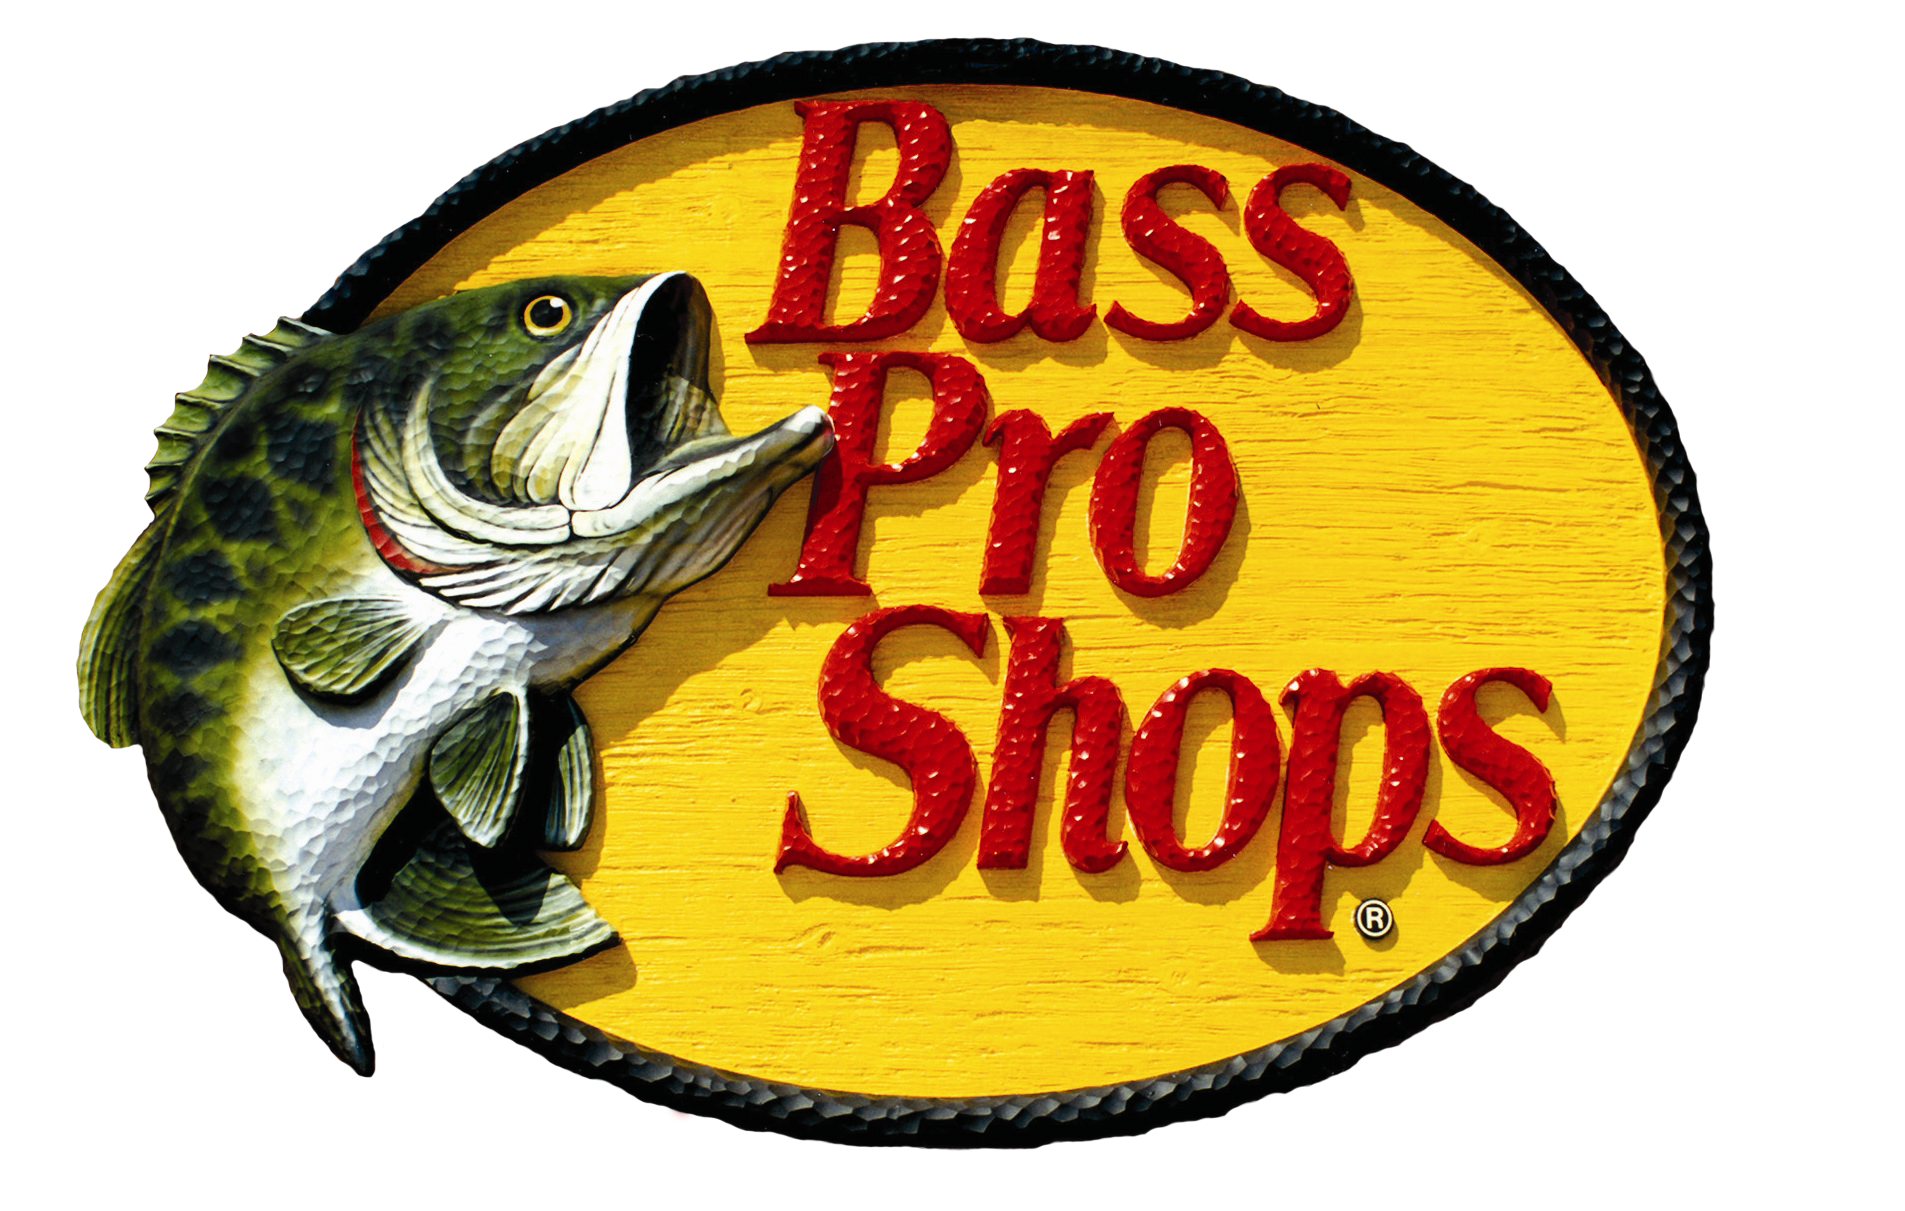 Сказки басс. Рыболовные бренды. Рыболовные эмблемы. Логотип рыболовного магазина. Логотипы рыболовных брендов.